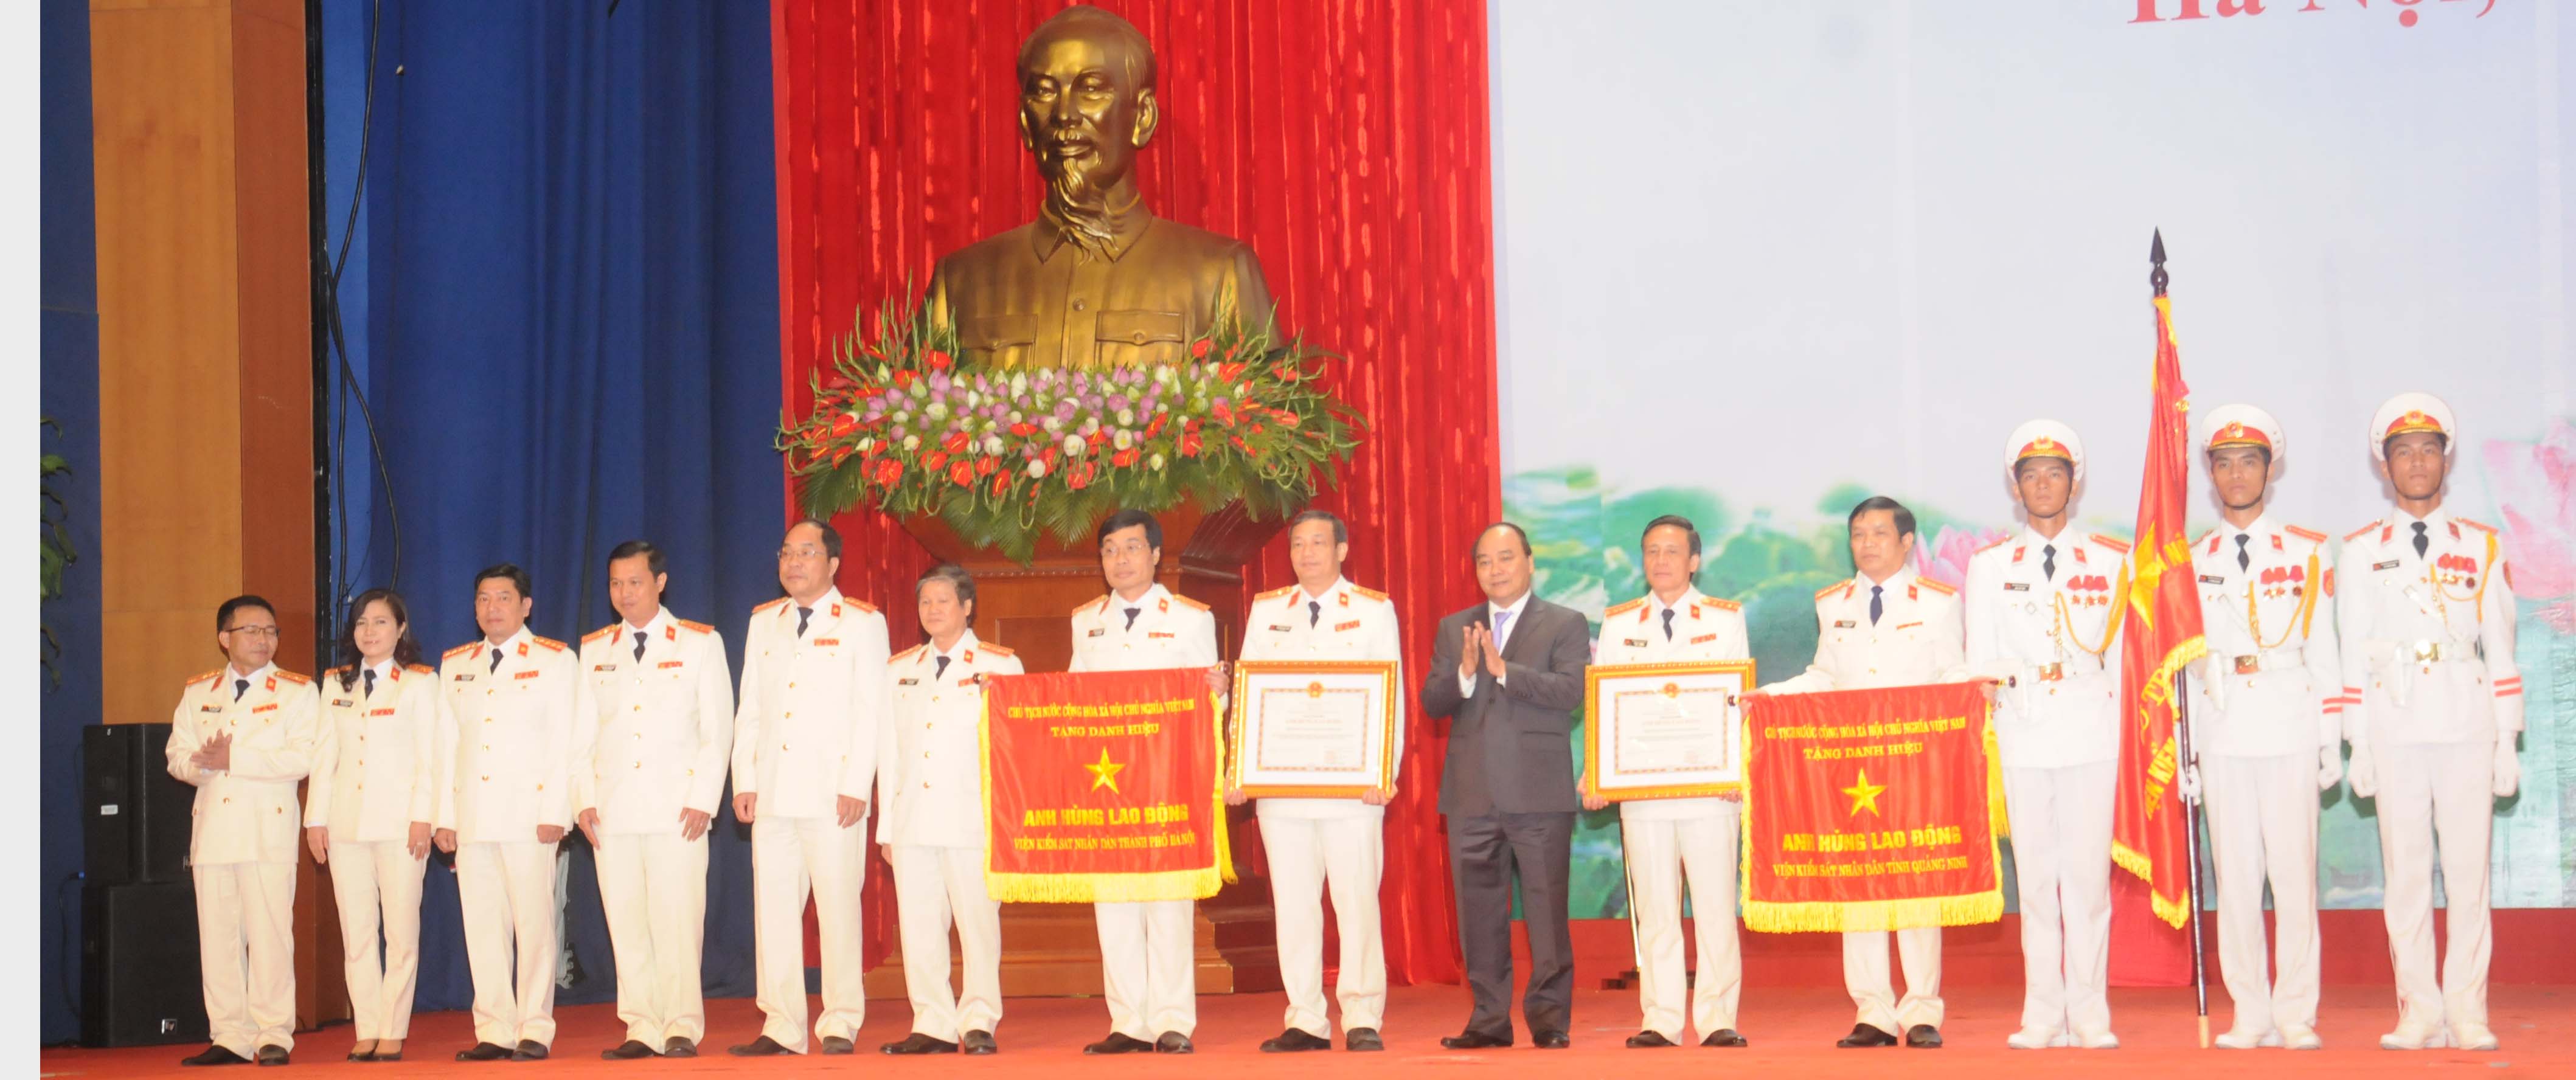 Đồng chí Nguyễn Xuân Phúc, Ủy viên Bộ Chính trị, Phó Thủ tướng Chính phủ trao tặng danh hiệu Anh hùng Lao động cho VKSND tỉnh Quảng Ninh và VKSND TP. Hà Nội 